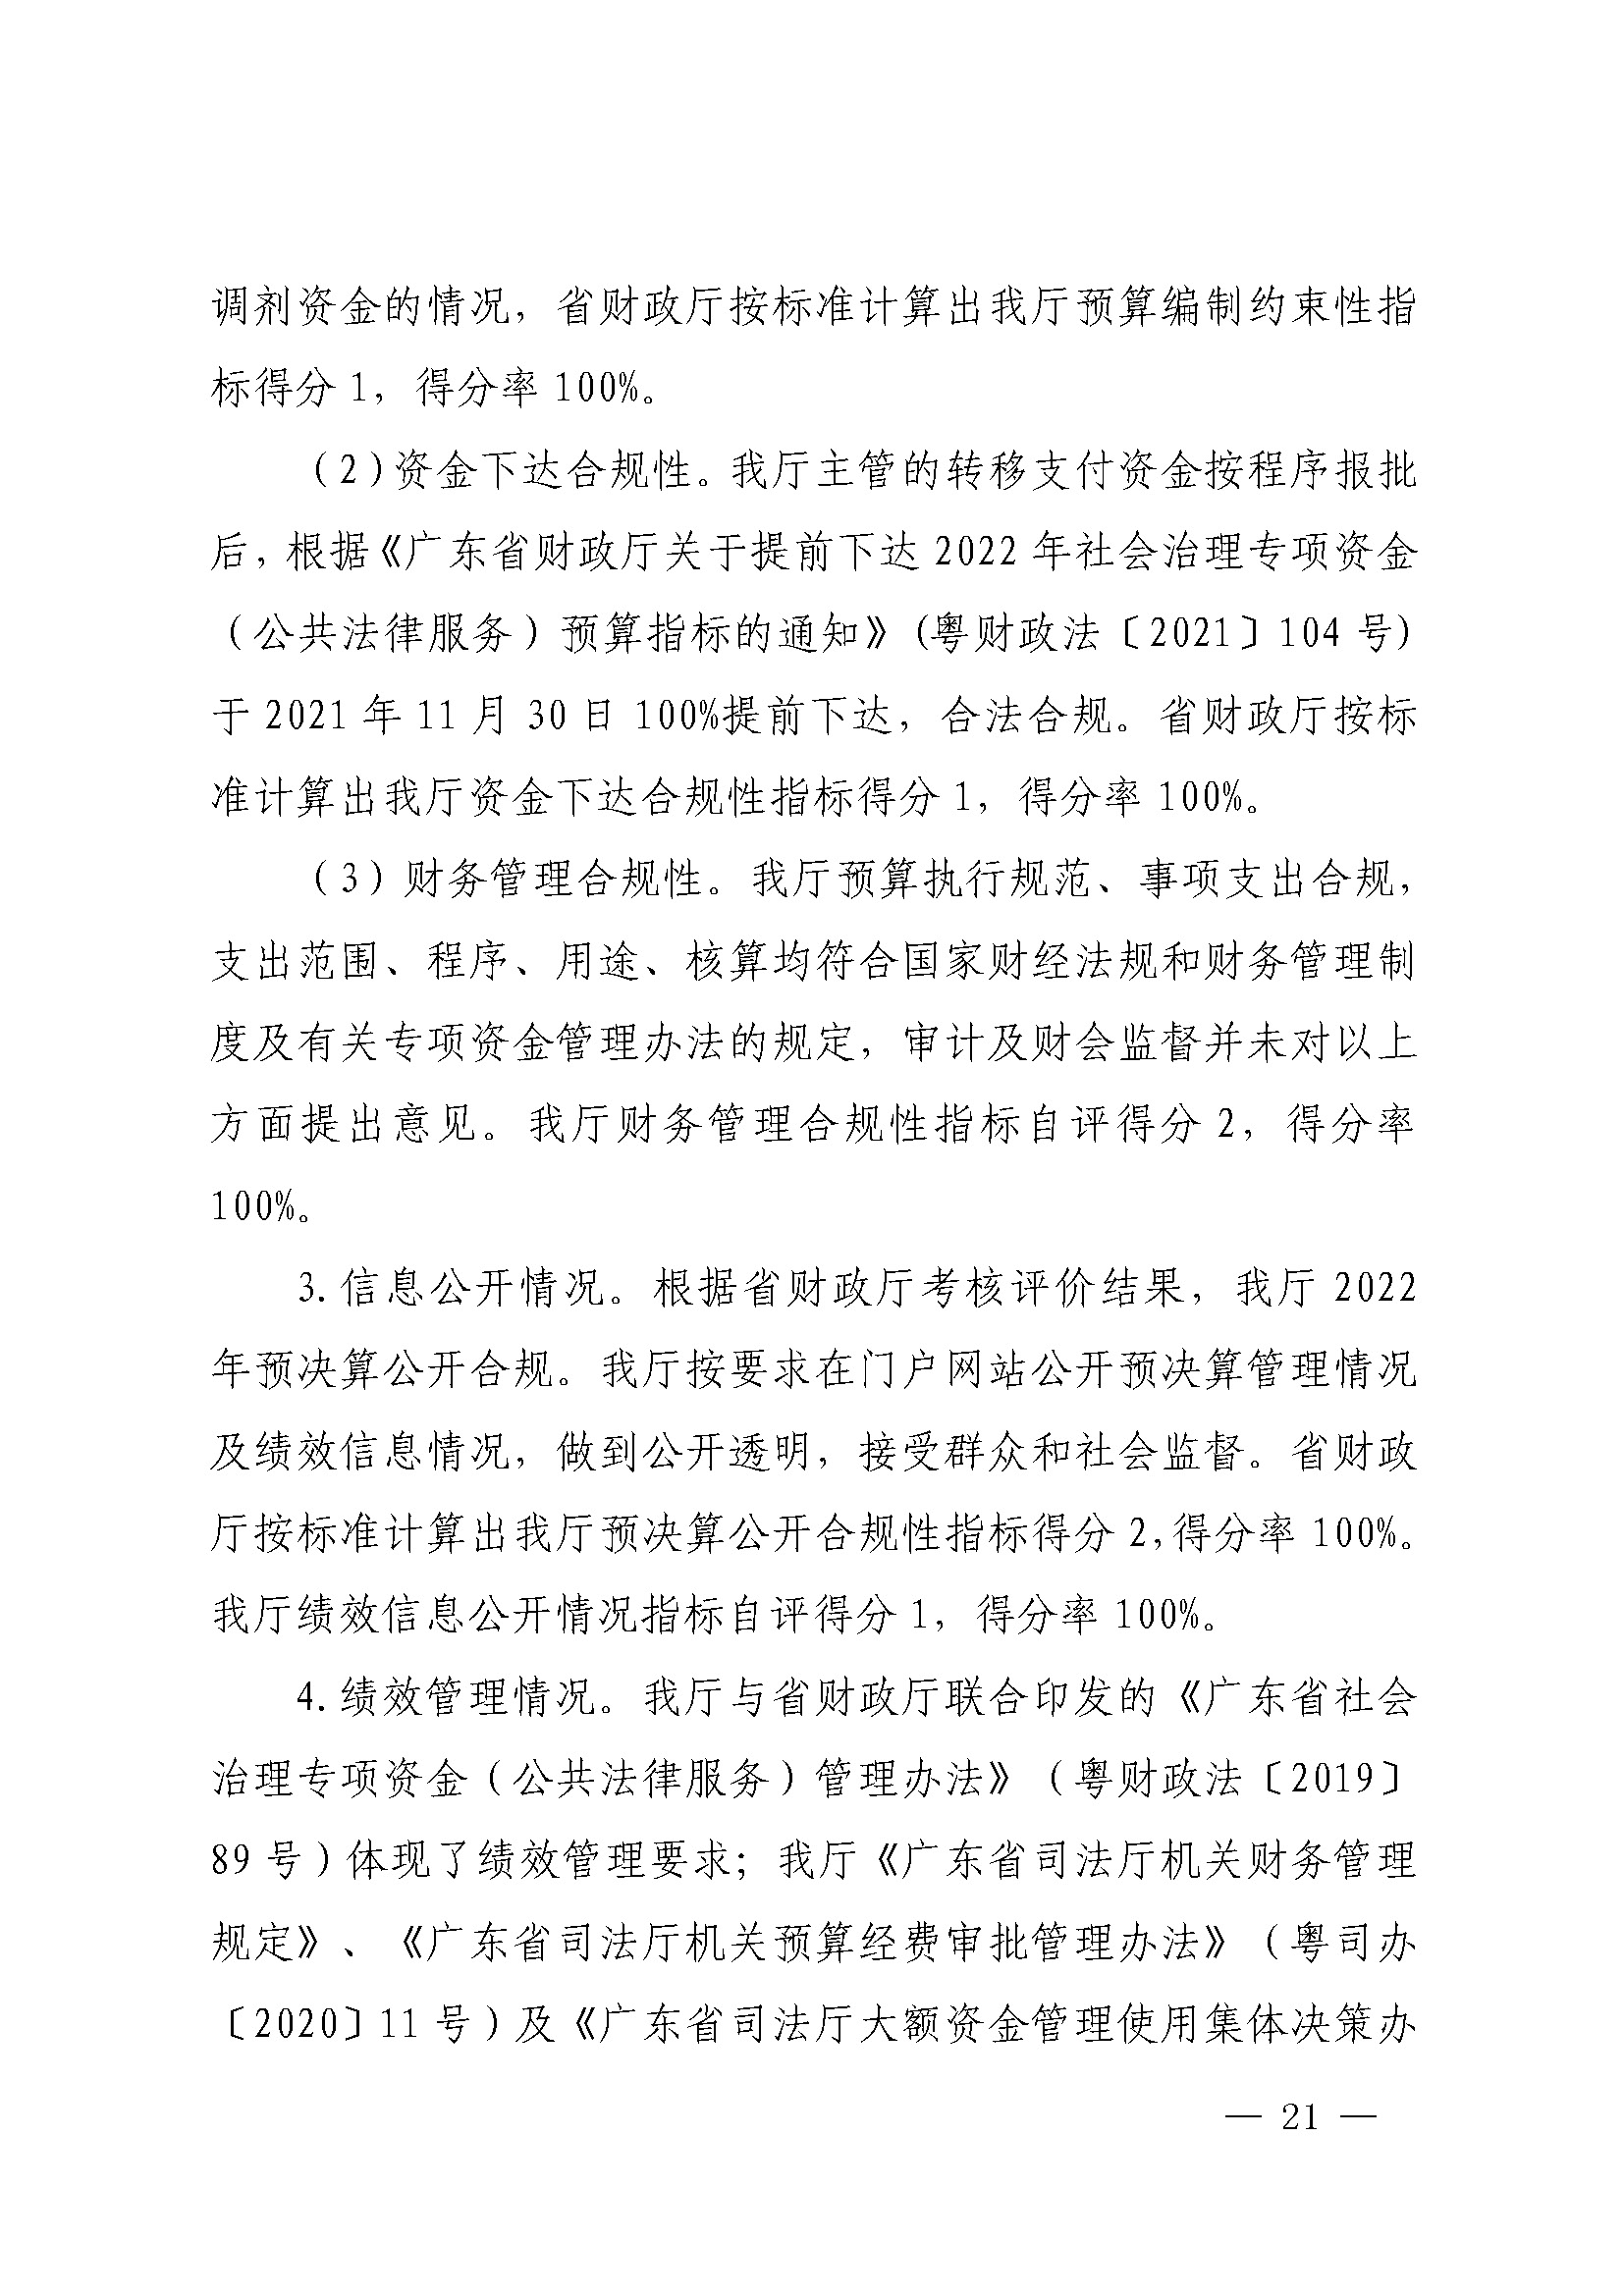 广东省司法厅2022年度部门整体支出绩效自评报告_页面_21.jpg